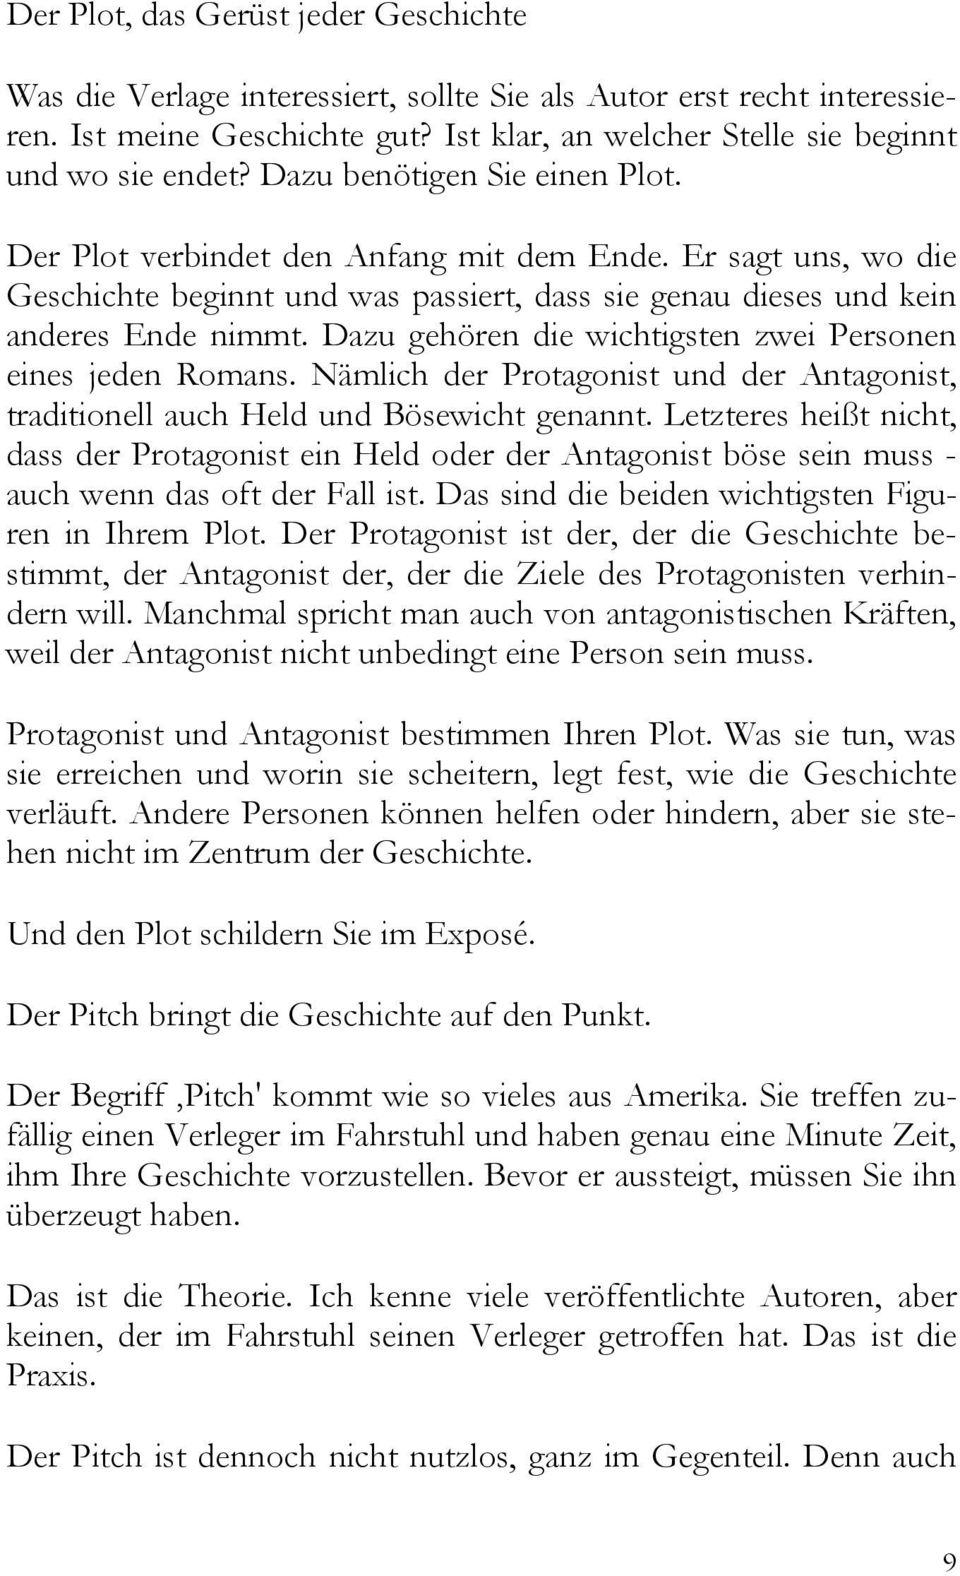 Drei Seiten Fur Ein Expose Hans Peter Roentgen Pdf Free Download